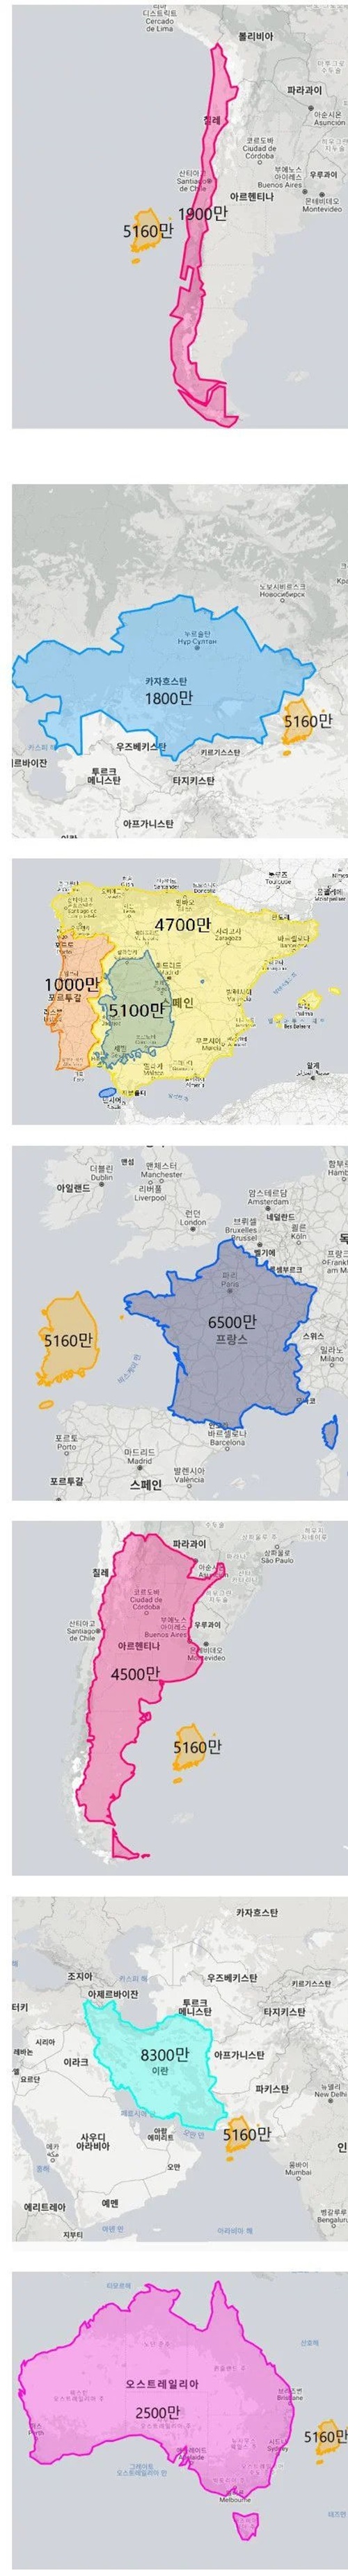 남한 인구 밀도 체감